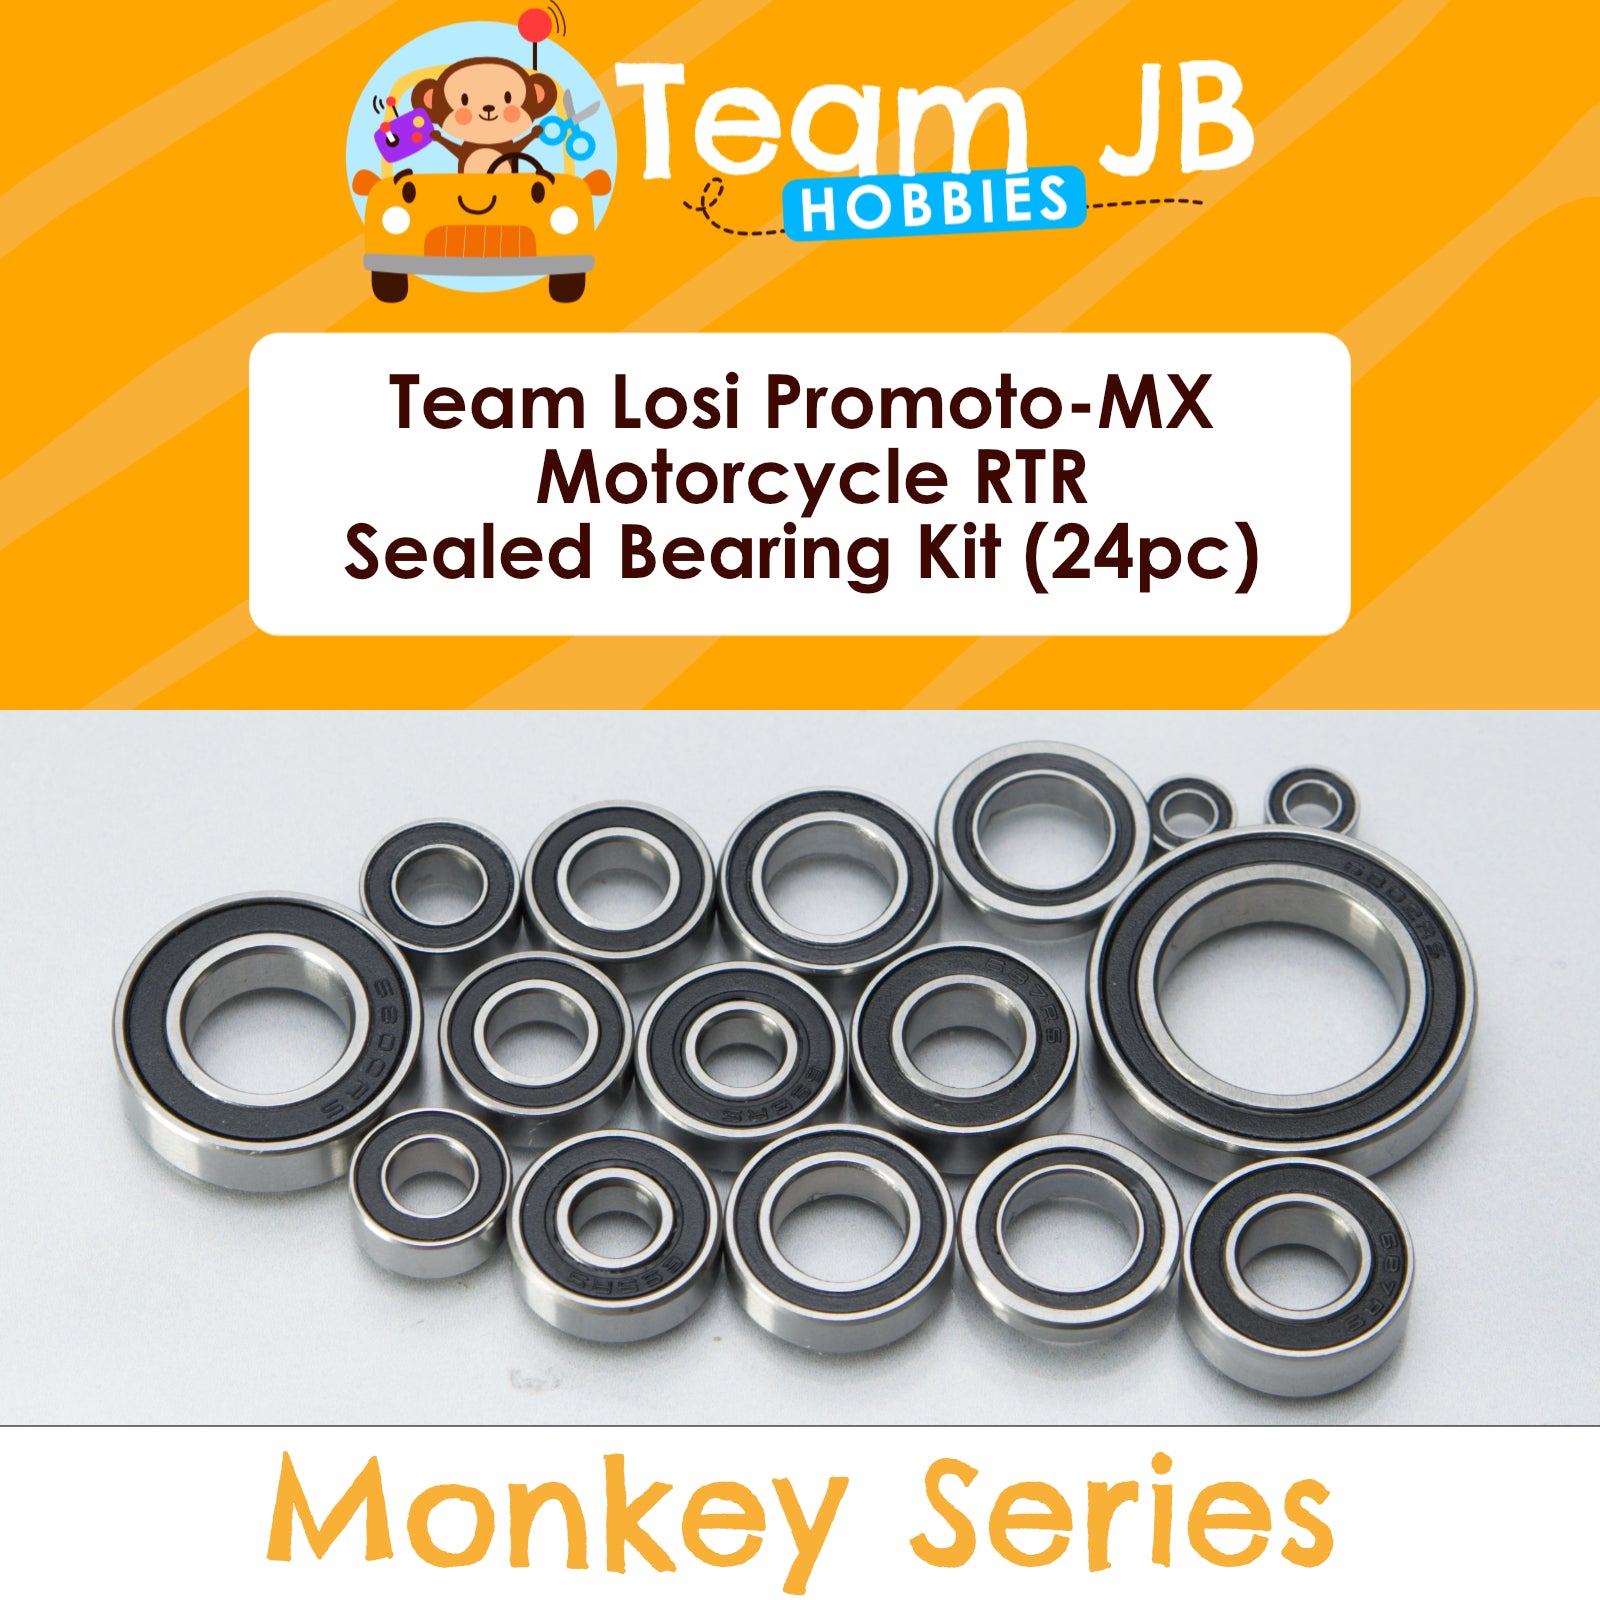 Team Losi Promoto-MX Motorcycle RTR - Sealed Bearing Kit